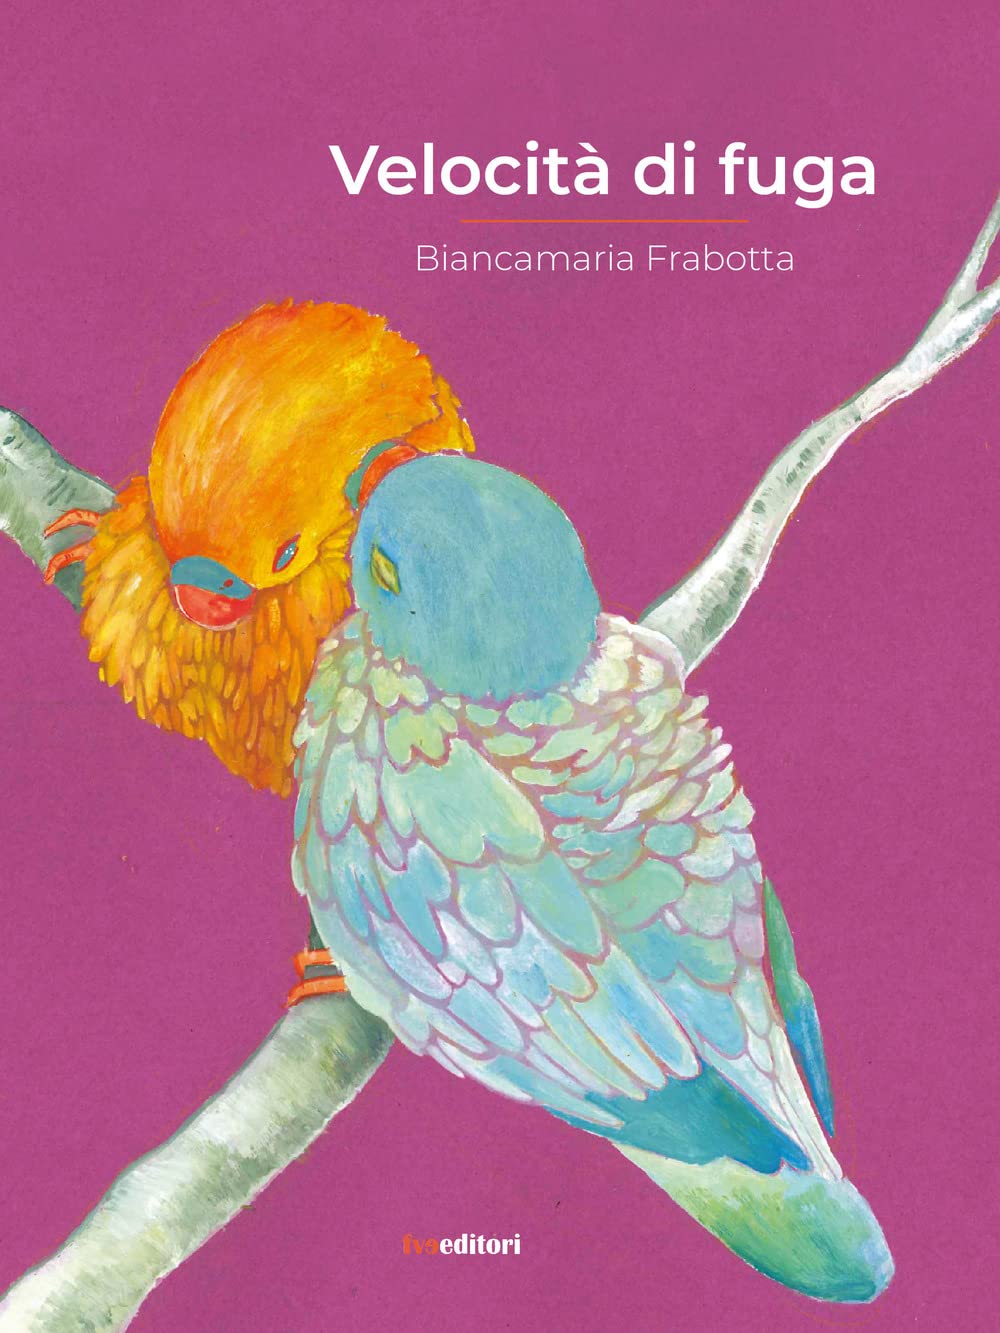 Libri Biancamaria Frabotta - Velocita Di Fuga NUOVO SIGILLATO, EDIZIONE DEL 15/02/2022 SUBITO DISPONIBILE